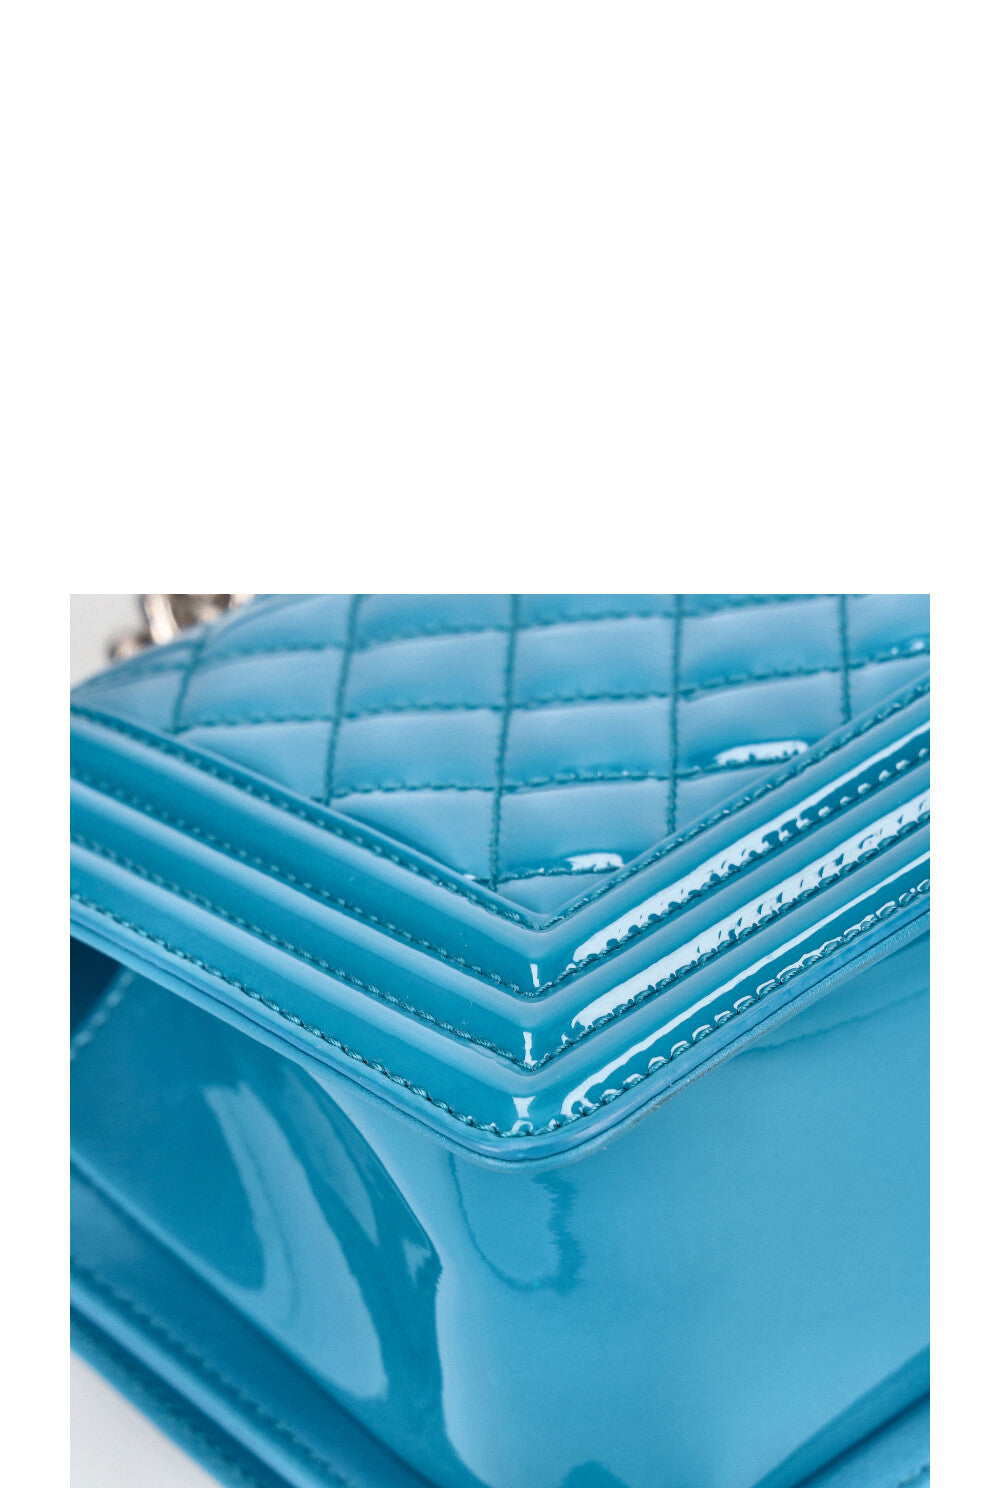 CHANEL Medium Boy Bag Patent Blue – REAWAKE